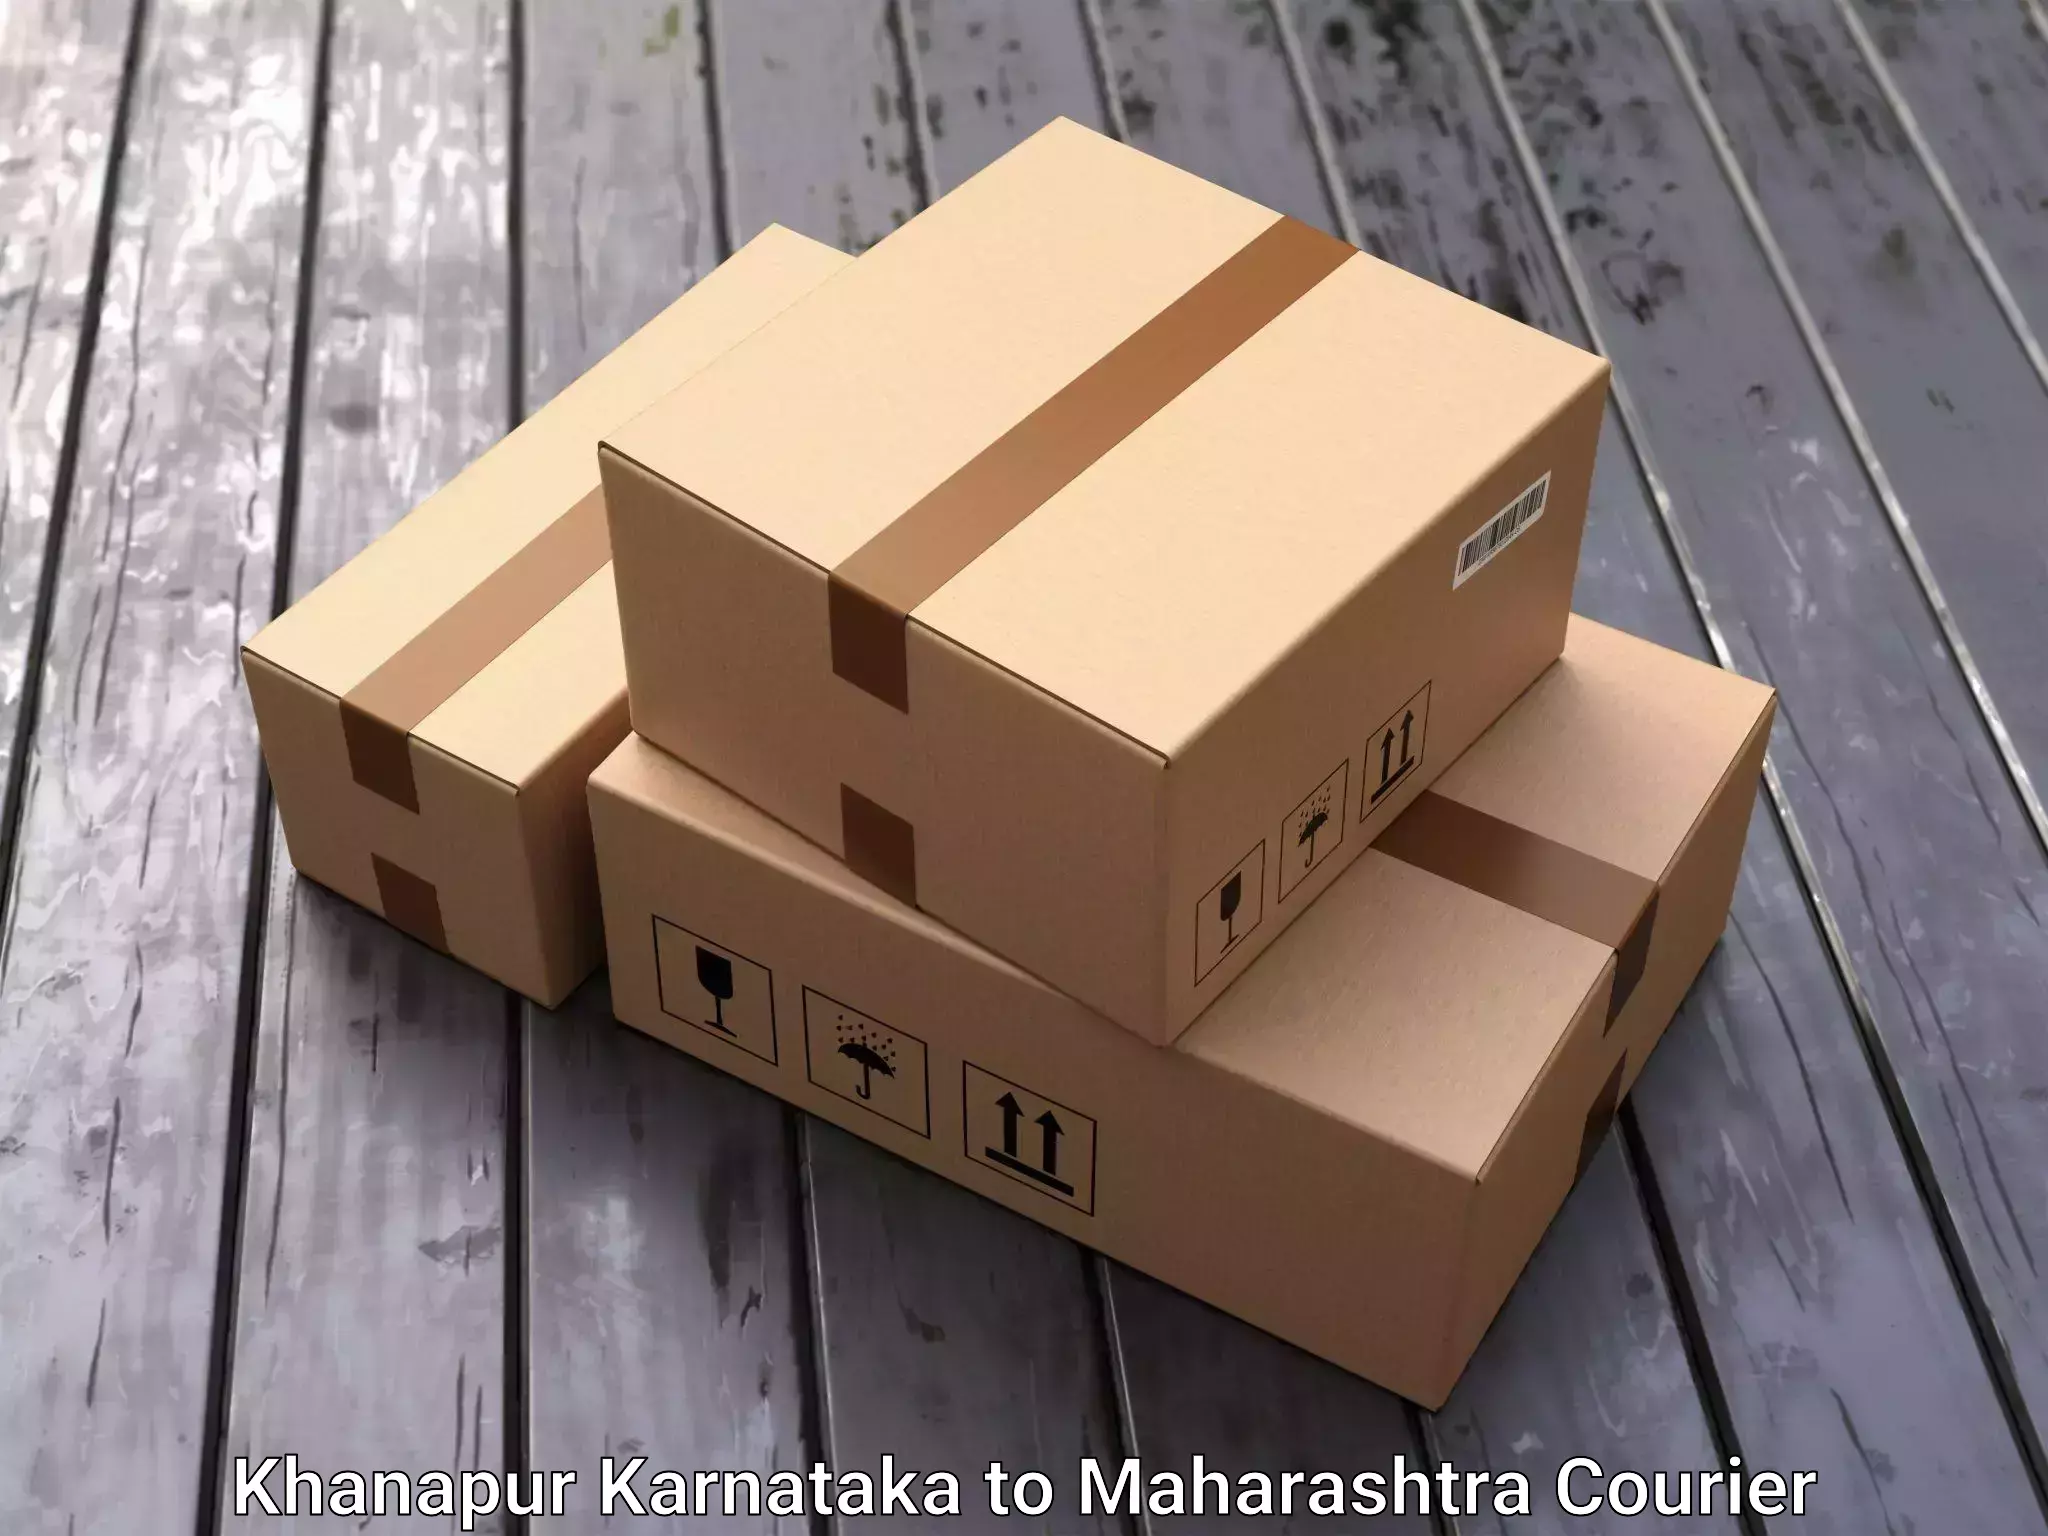 Safe home relocation in Khanapur Karnataka to Maharashtra